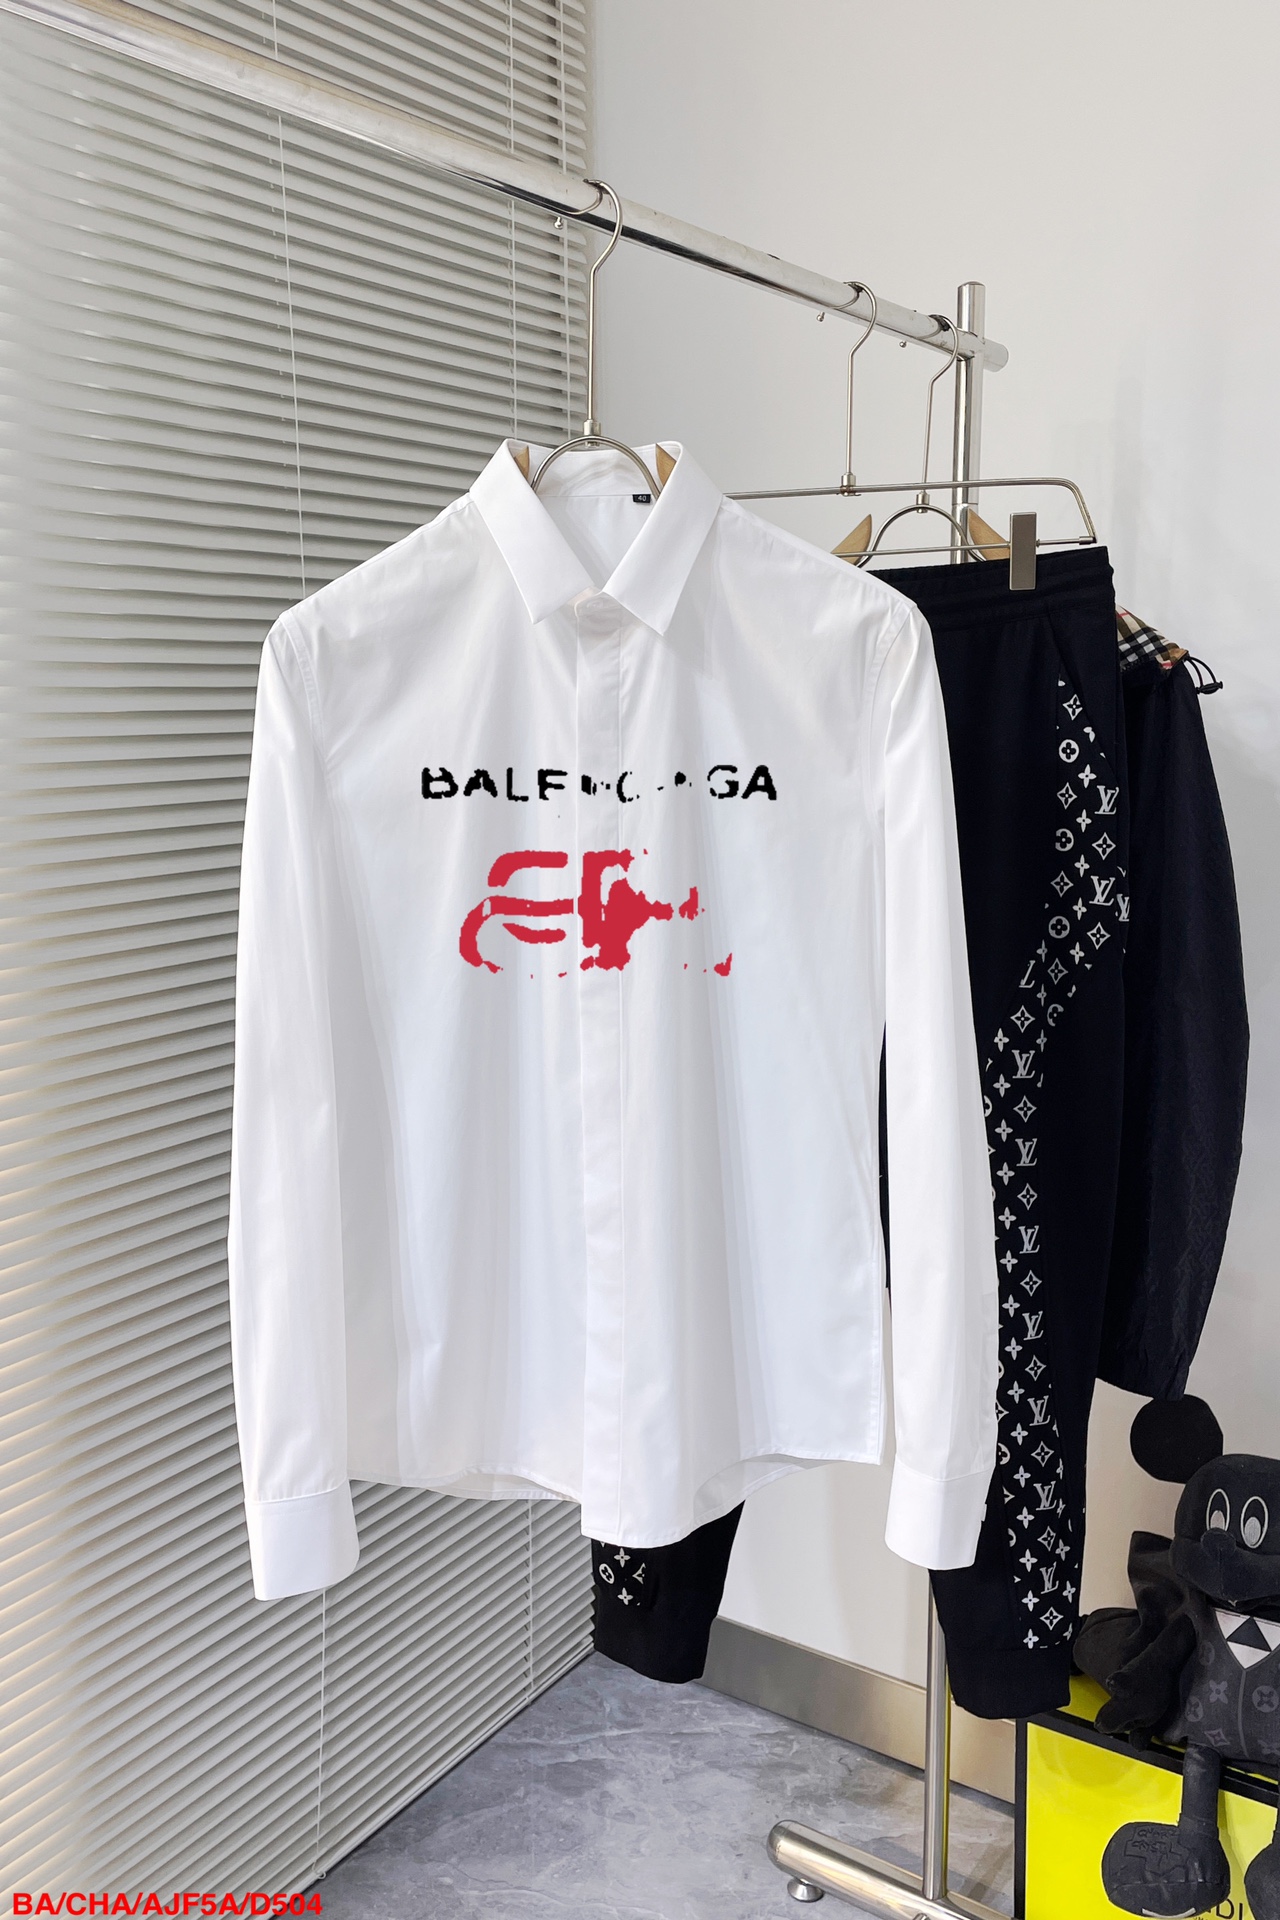 Balenciaga Clothing Shirts & Blouses Black White Men Cotton Spring Collection